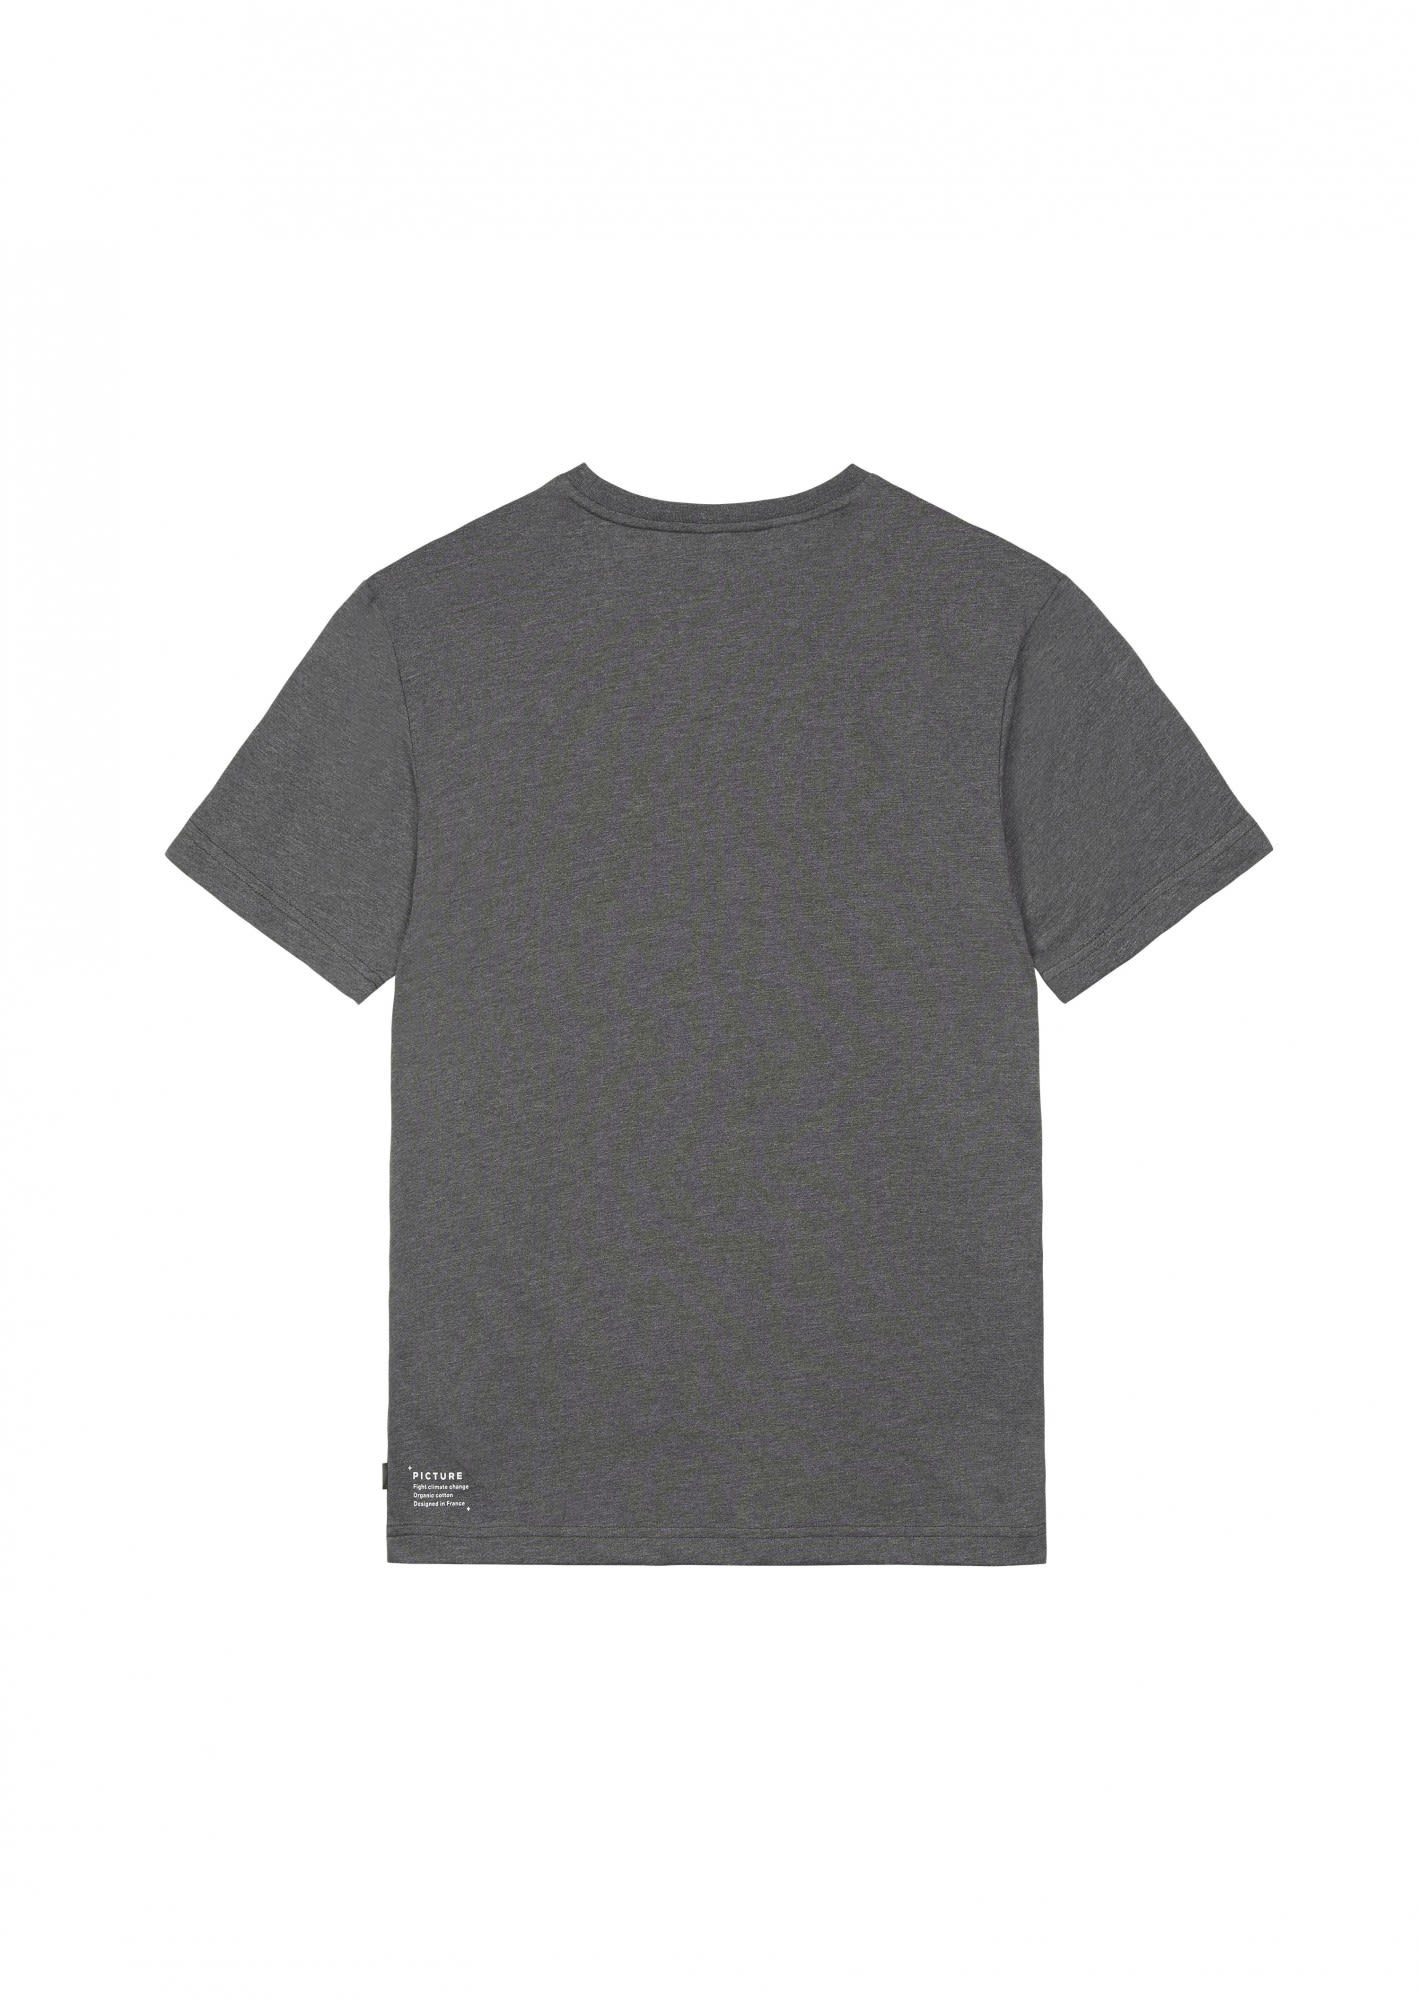 Melange Kurzarm-Shirt Tee Picture Dark Herren Grey Cork T-Shirt M Picture Lil